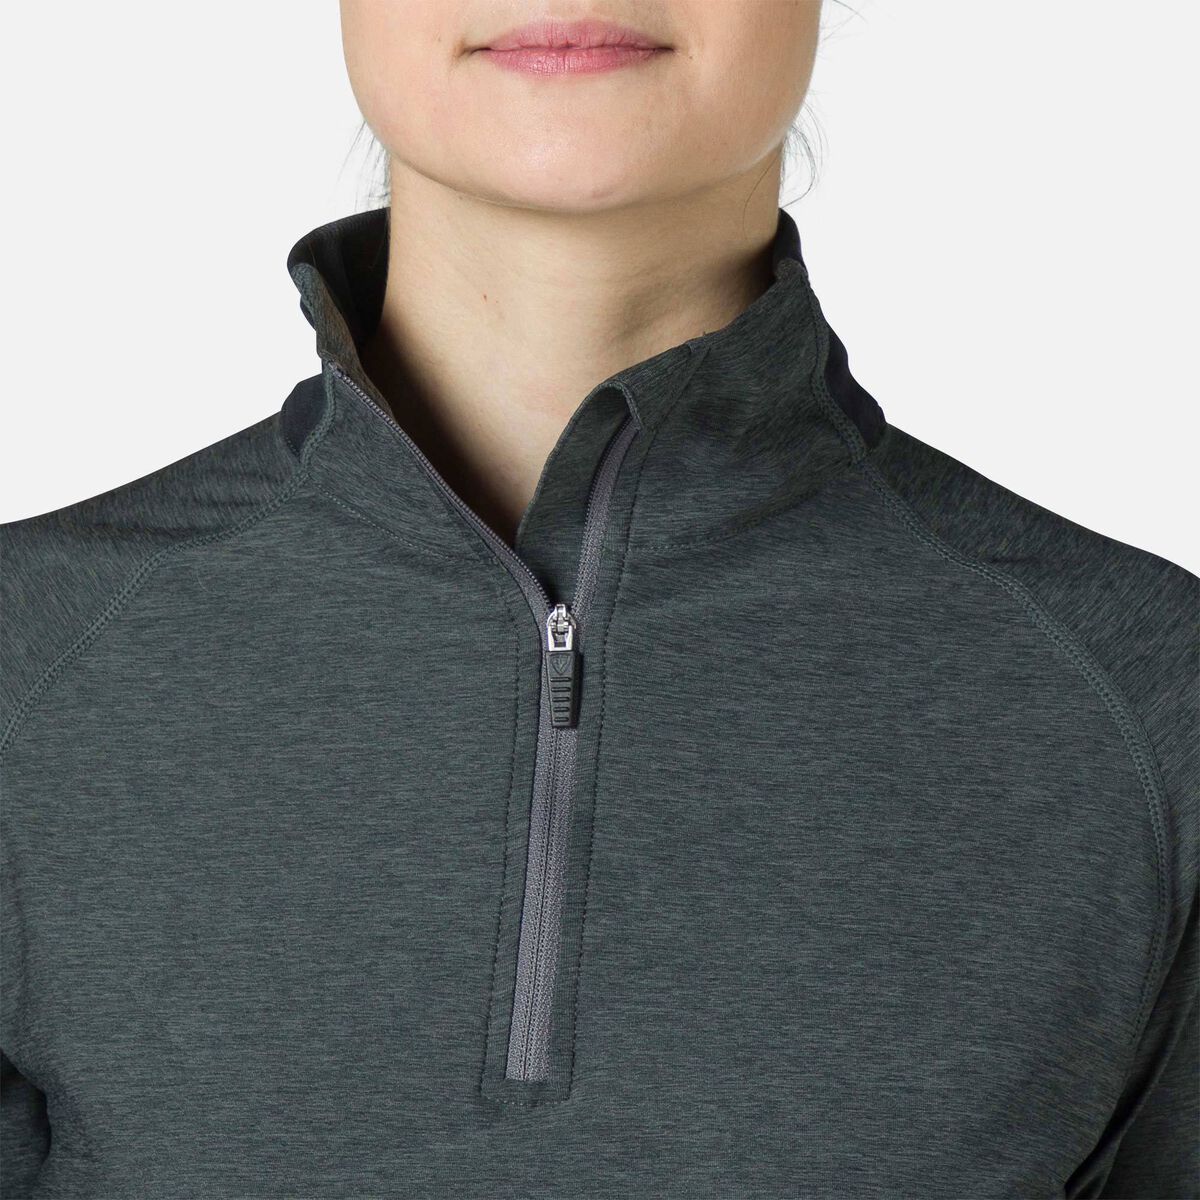 Rossignol Women's Melange Half-Zip Hiking Pullover grey